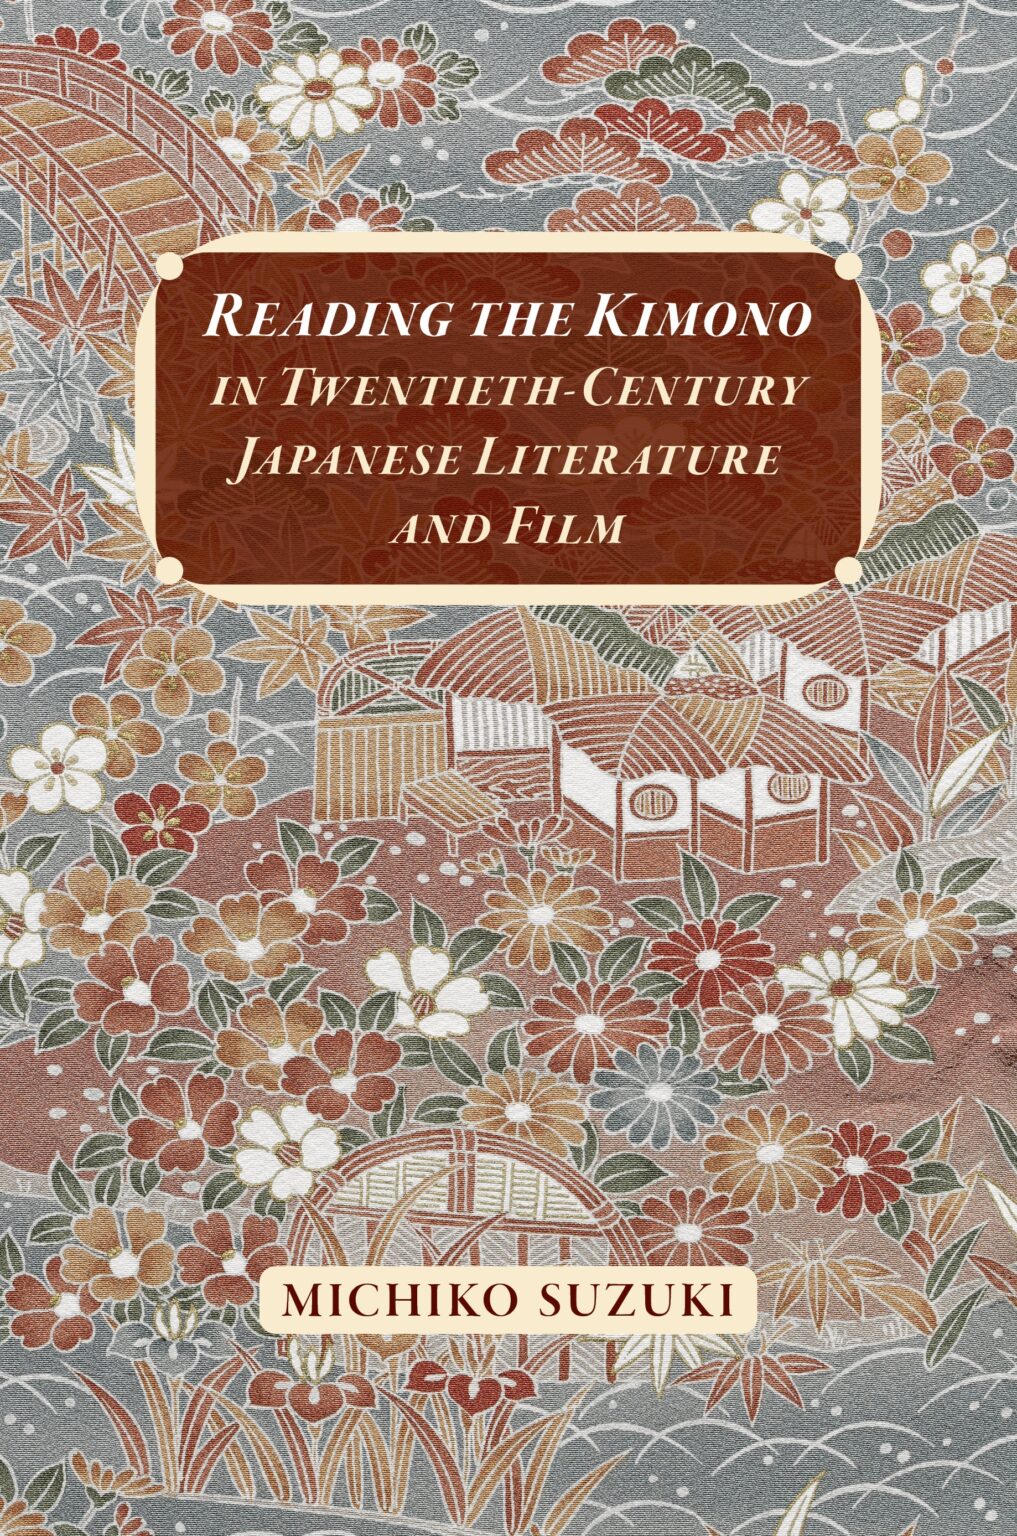 Reading the Kimono book cover